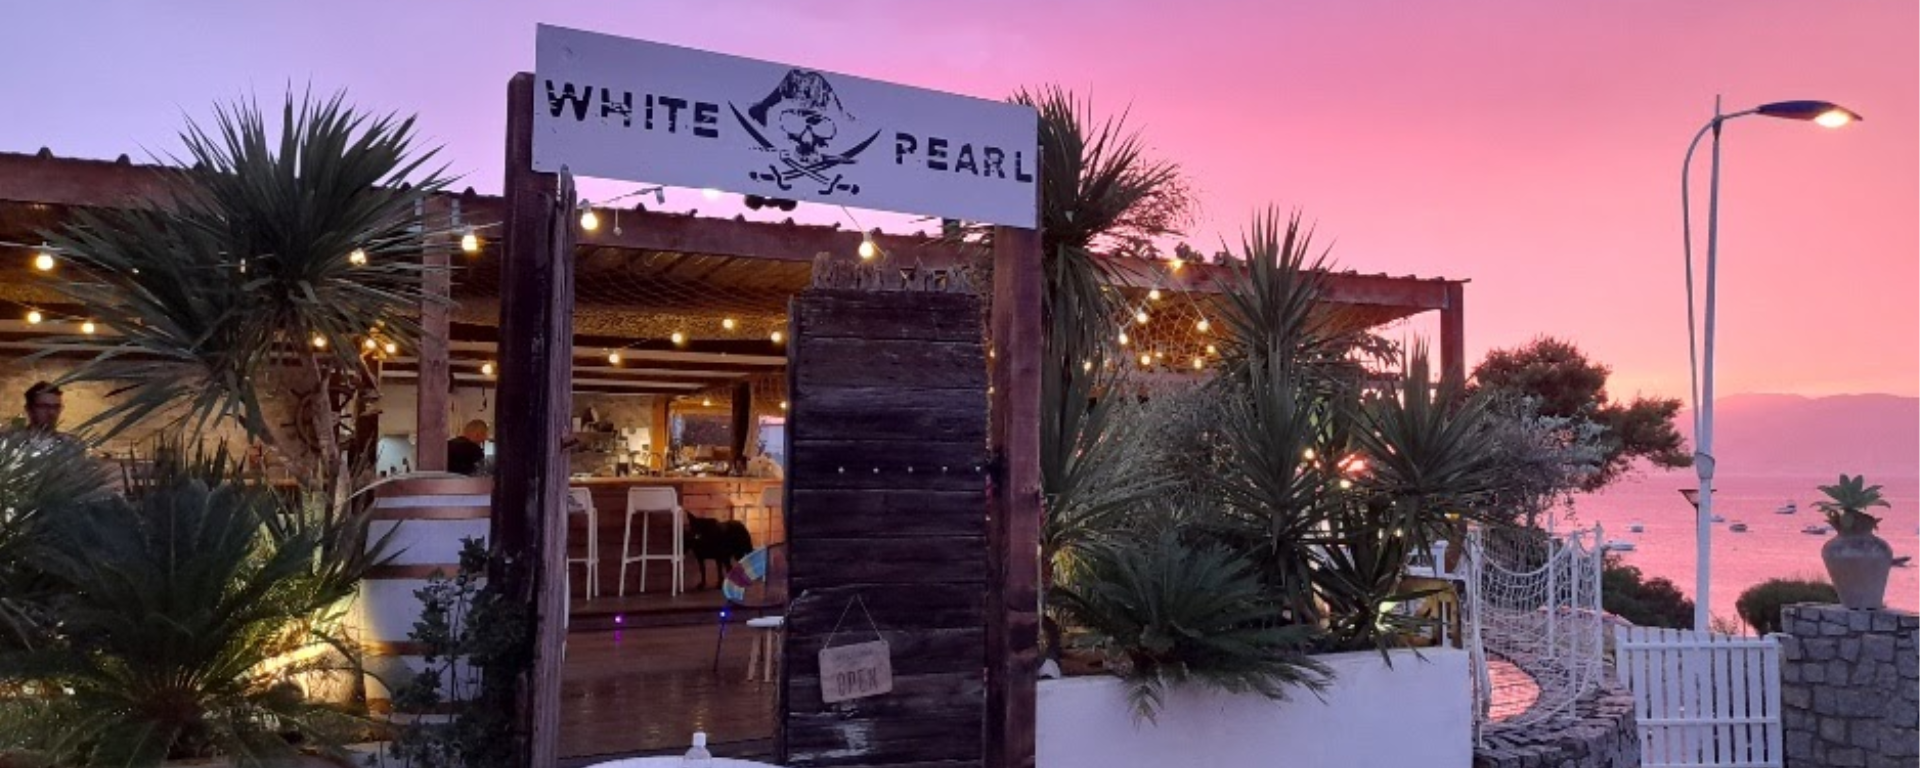 2020- White Pearl- devanture coucher de soleil g photo